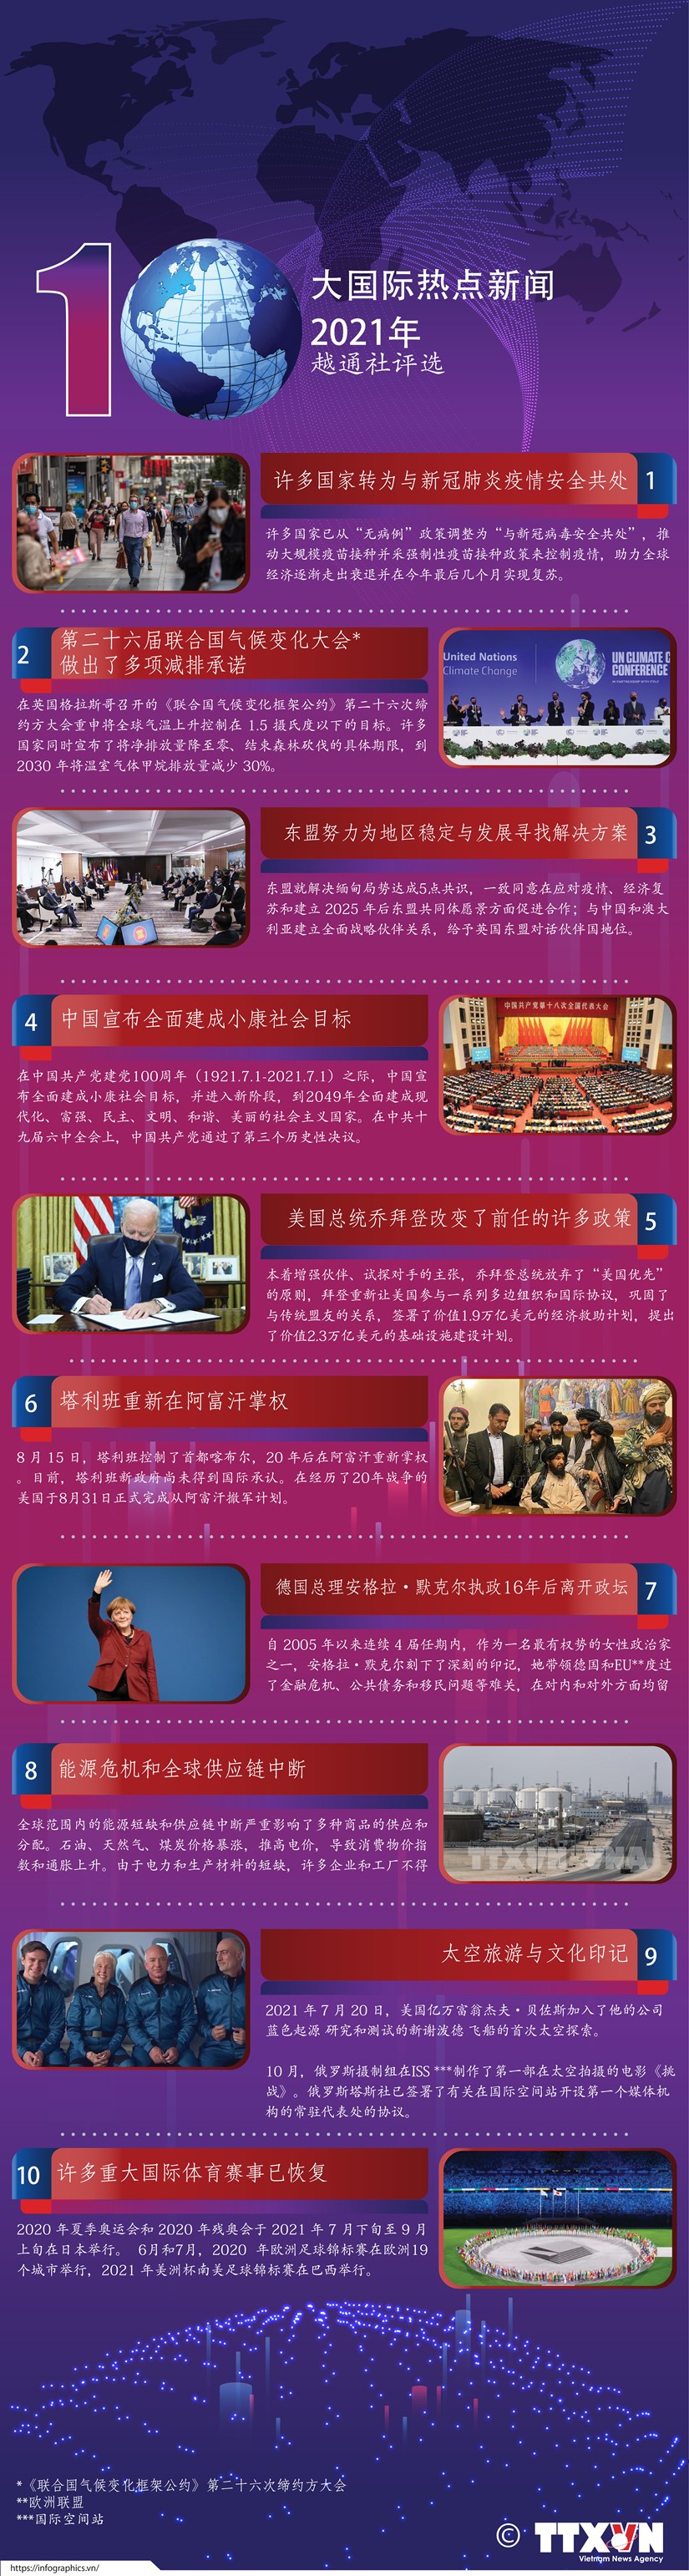 图表新闻：越通社评选2021年国际十大新闻 hinh anh 1